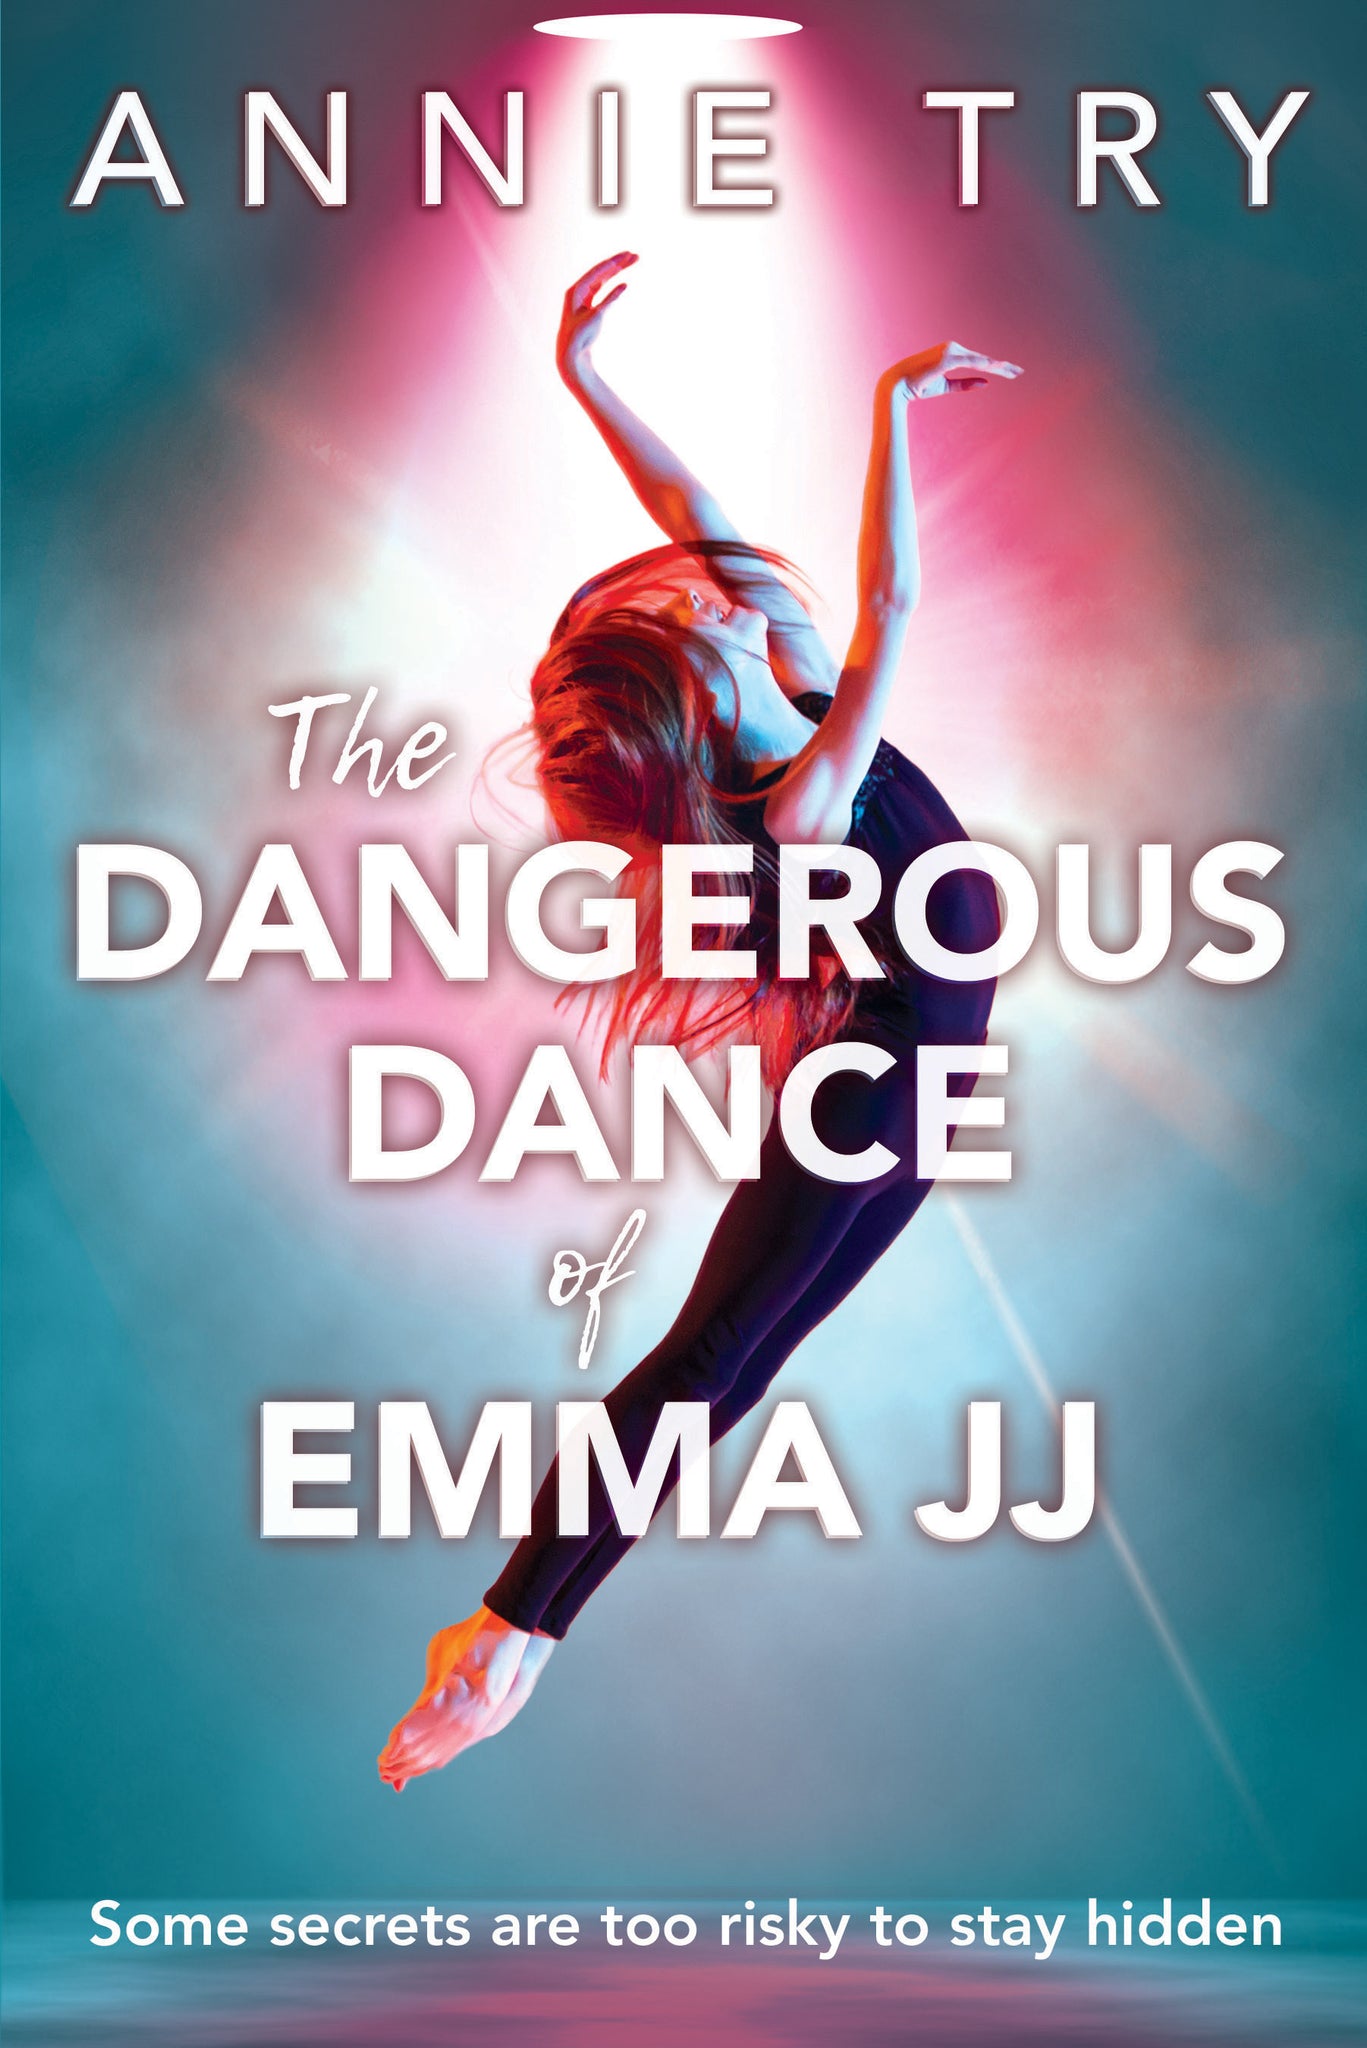 The Dangerous Dance of Emma JJ